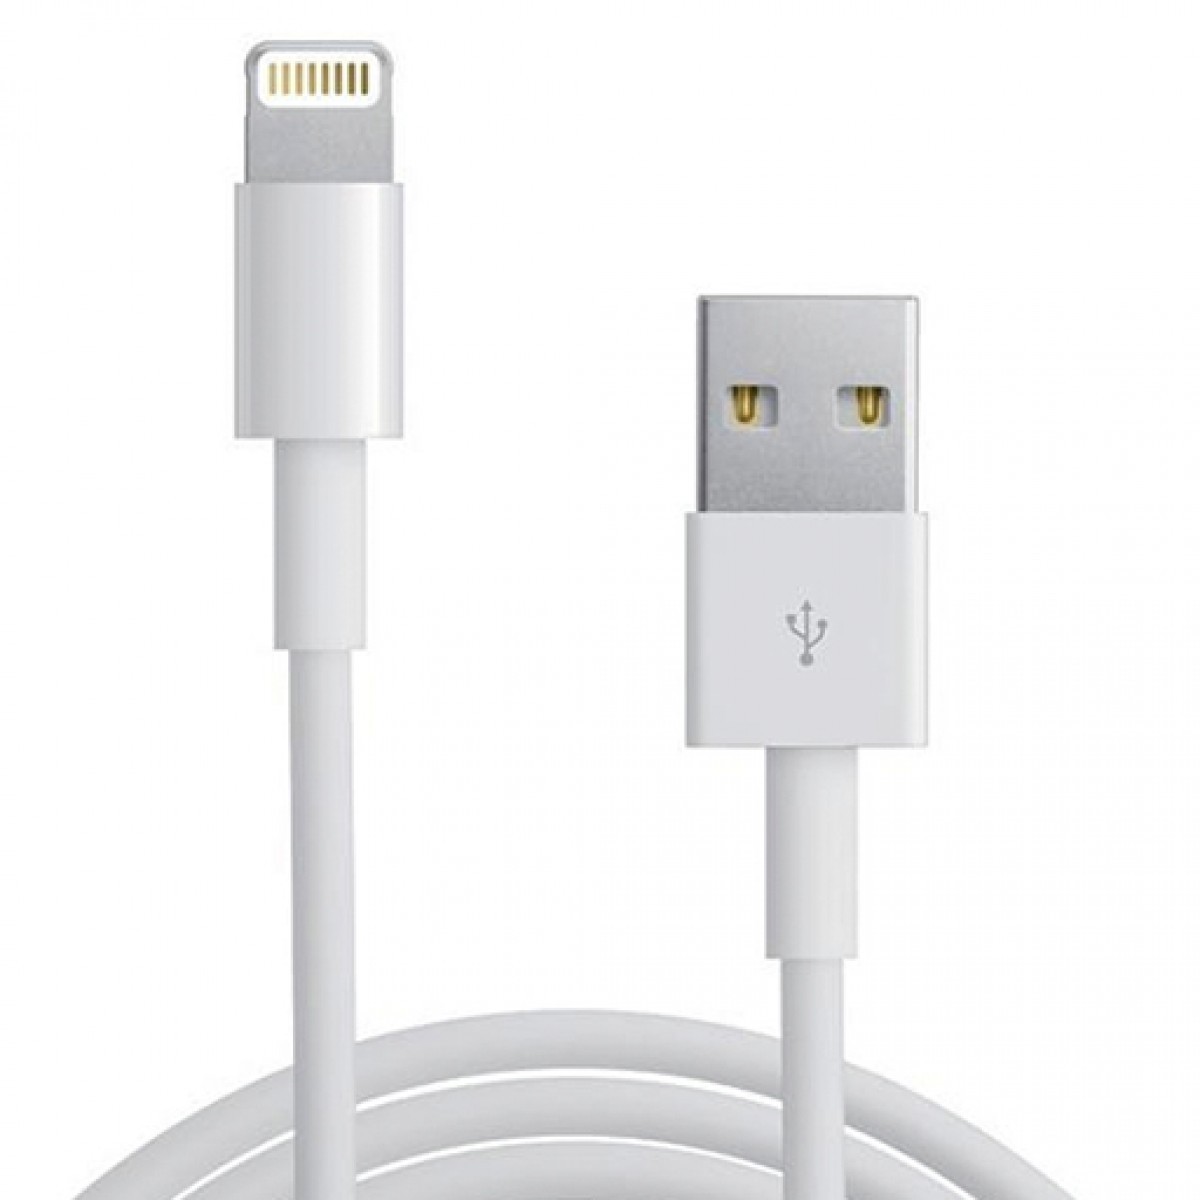 USB кабель Lightning для iPhone 5 купить в СПБ